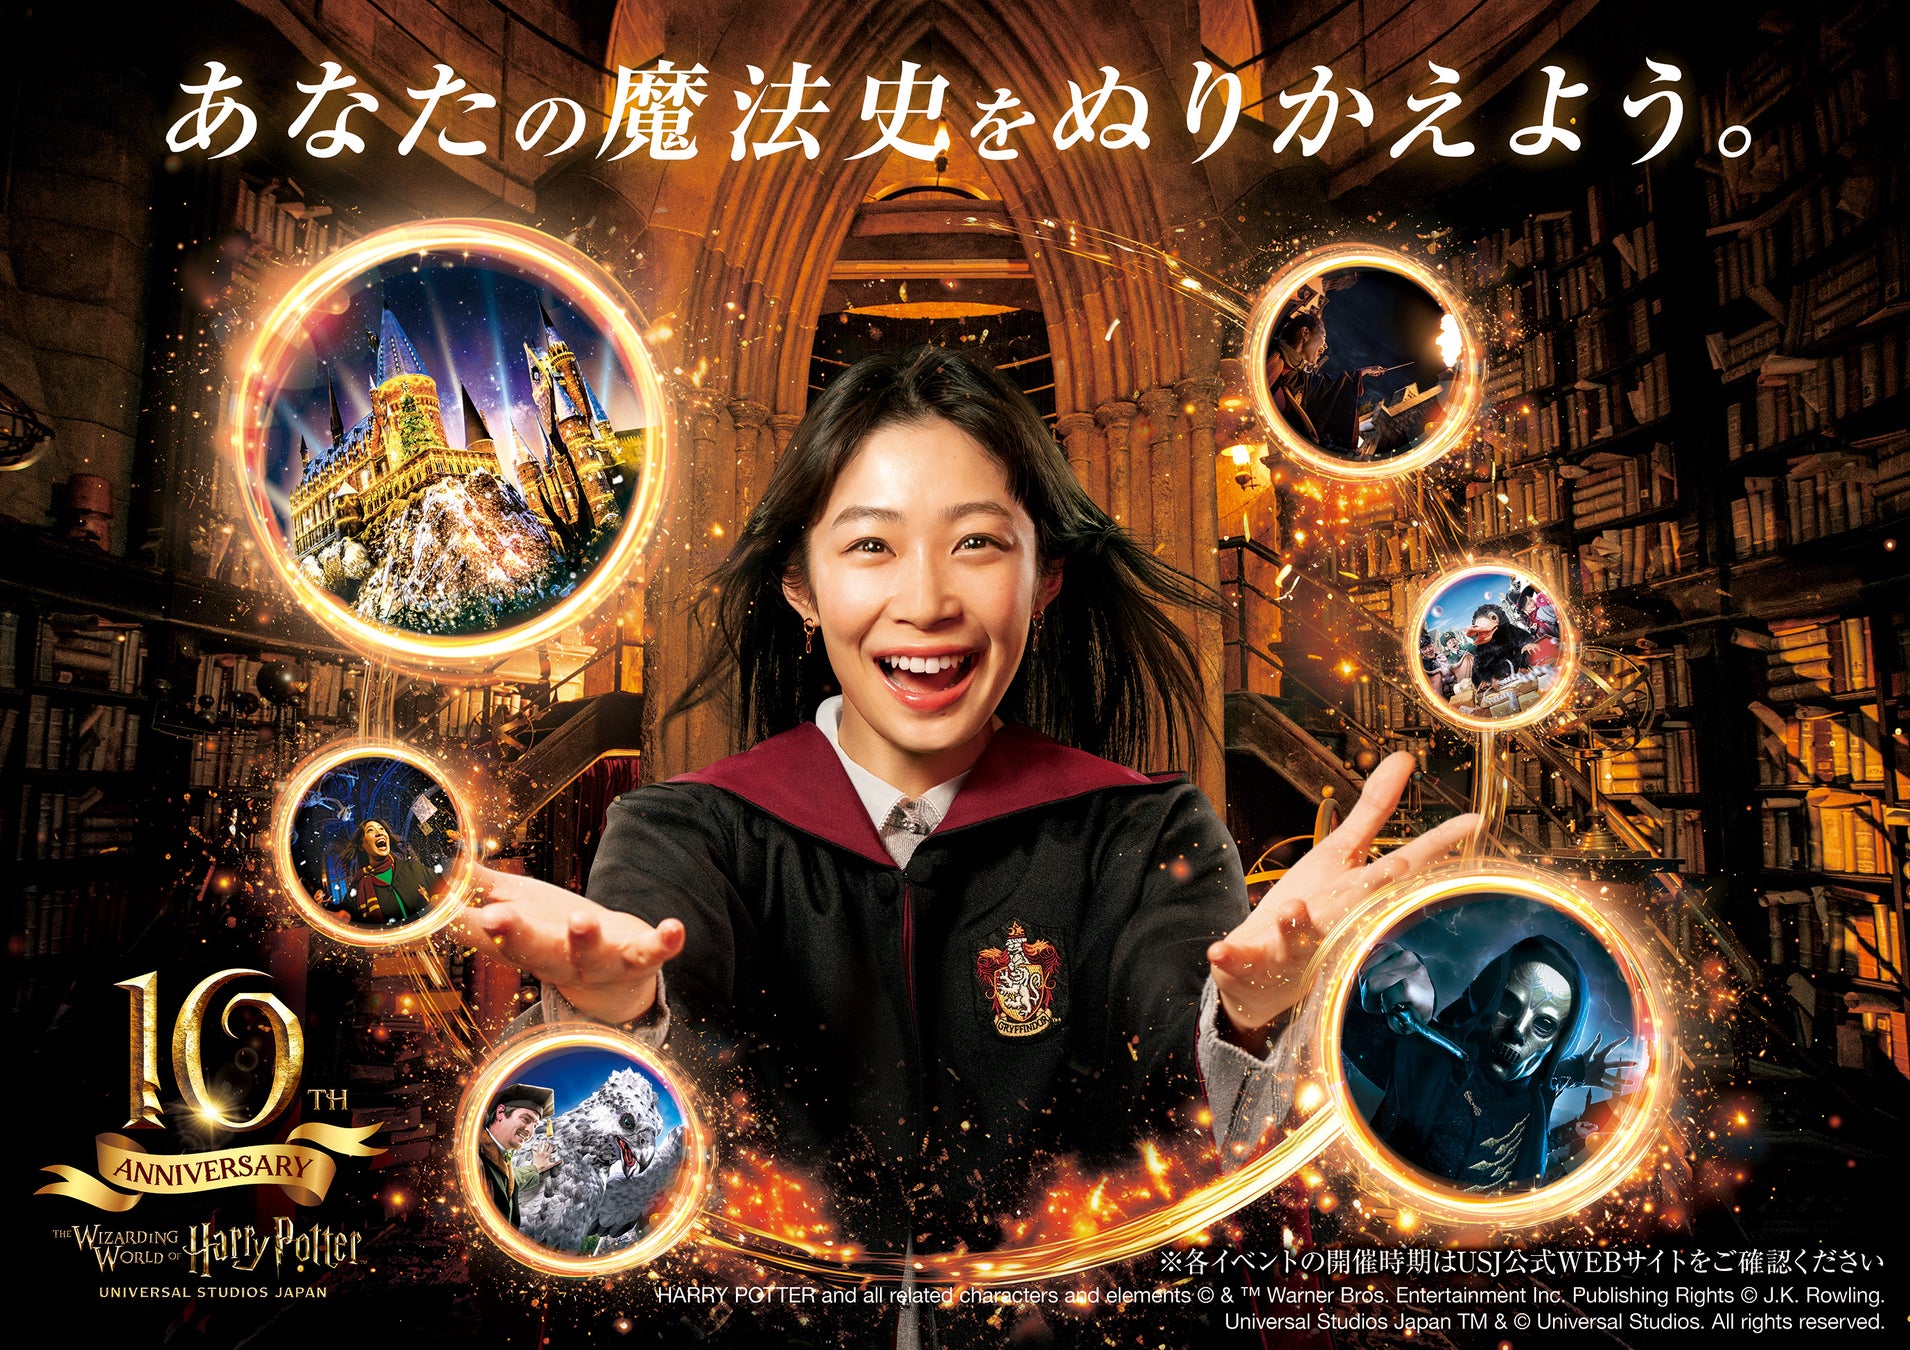 『ウィザーディング・ワールド・オブ・ハリー・ポッターTM』10周年“あなたと魔法との歴史”が、また新しくぬりかえられる、10年目の特別な体験が続々登場!!